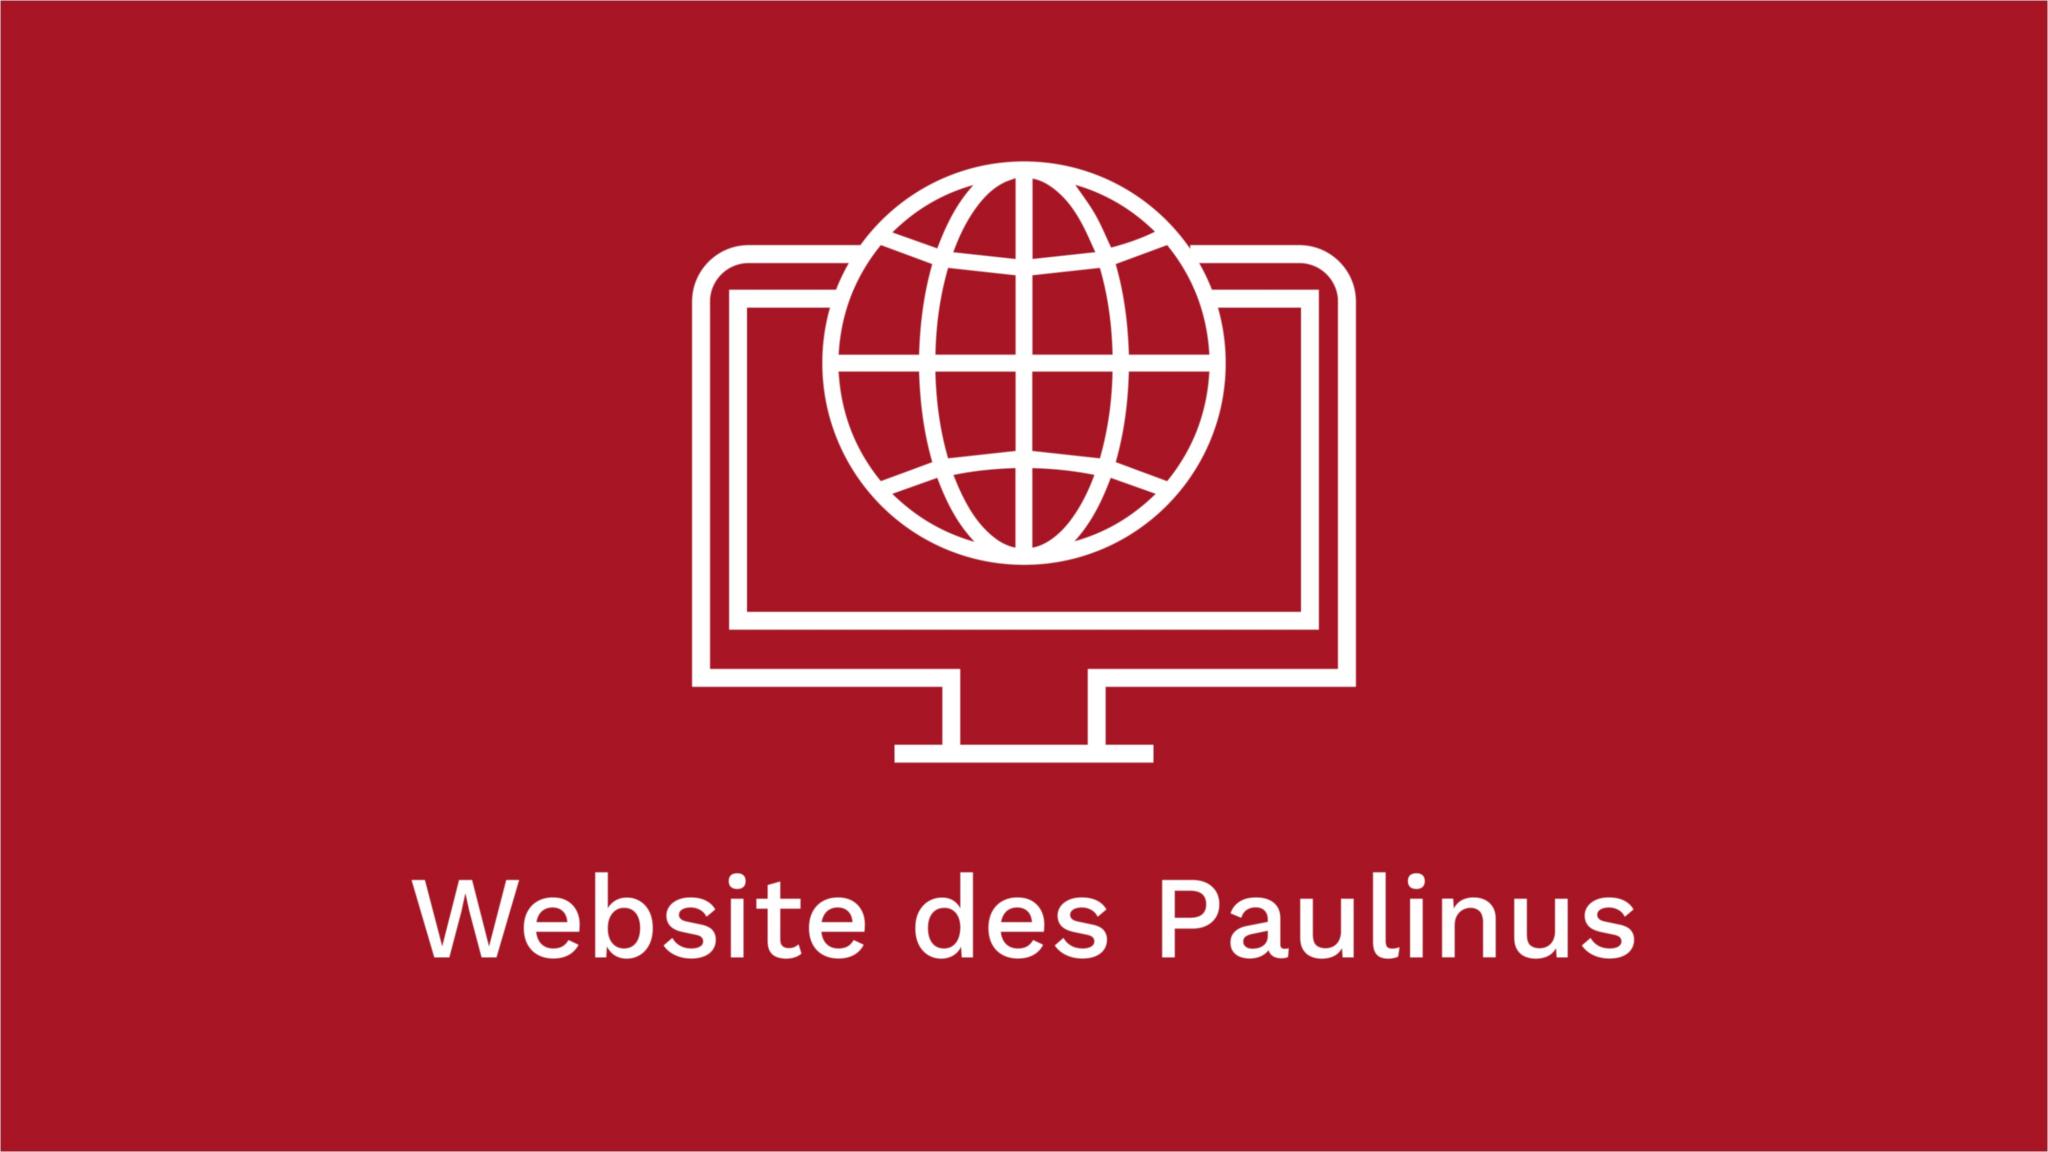 Website des Paulinus